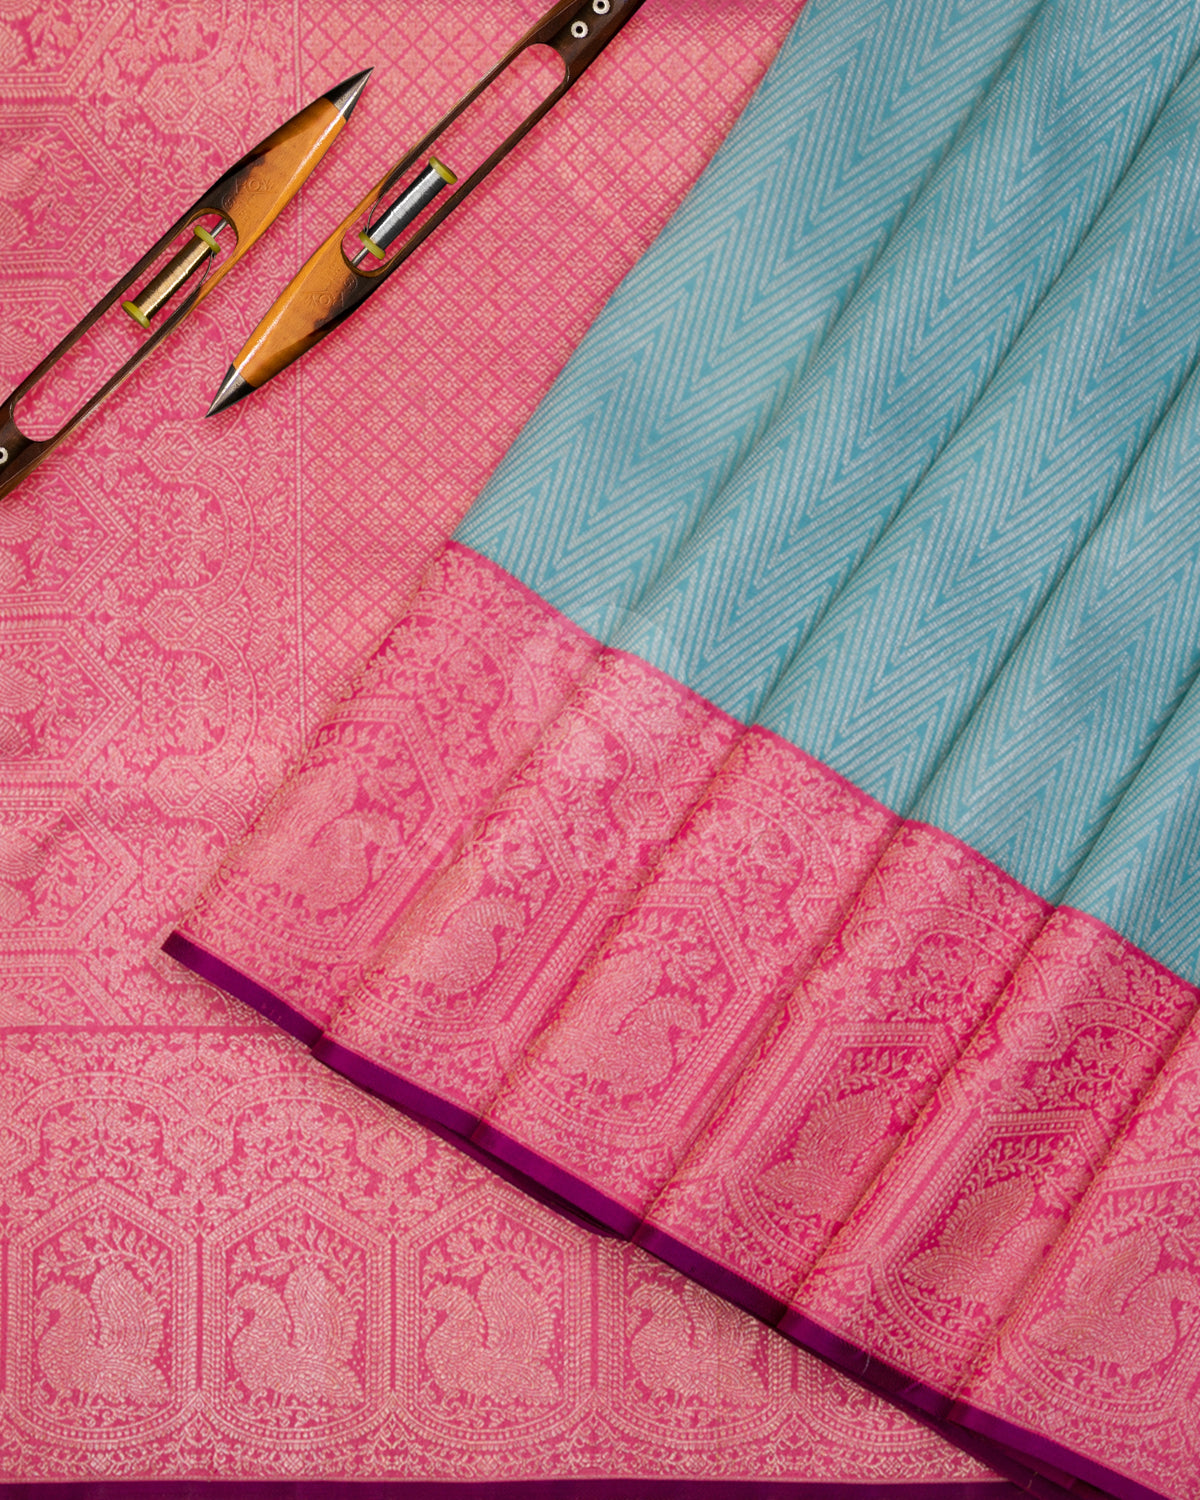 Sky Blue & Taffy Pink Kanjivaram Silk Saree - S967 - View 2